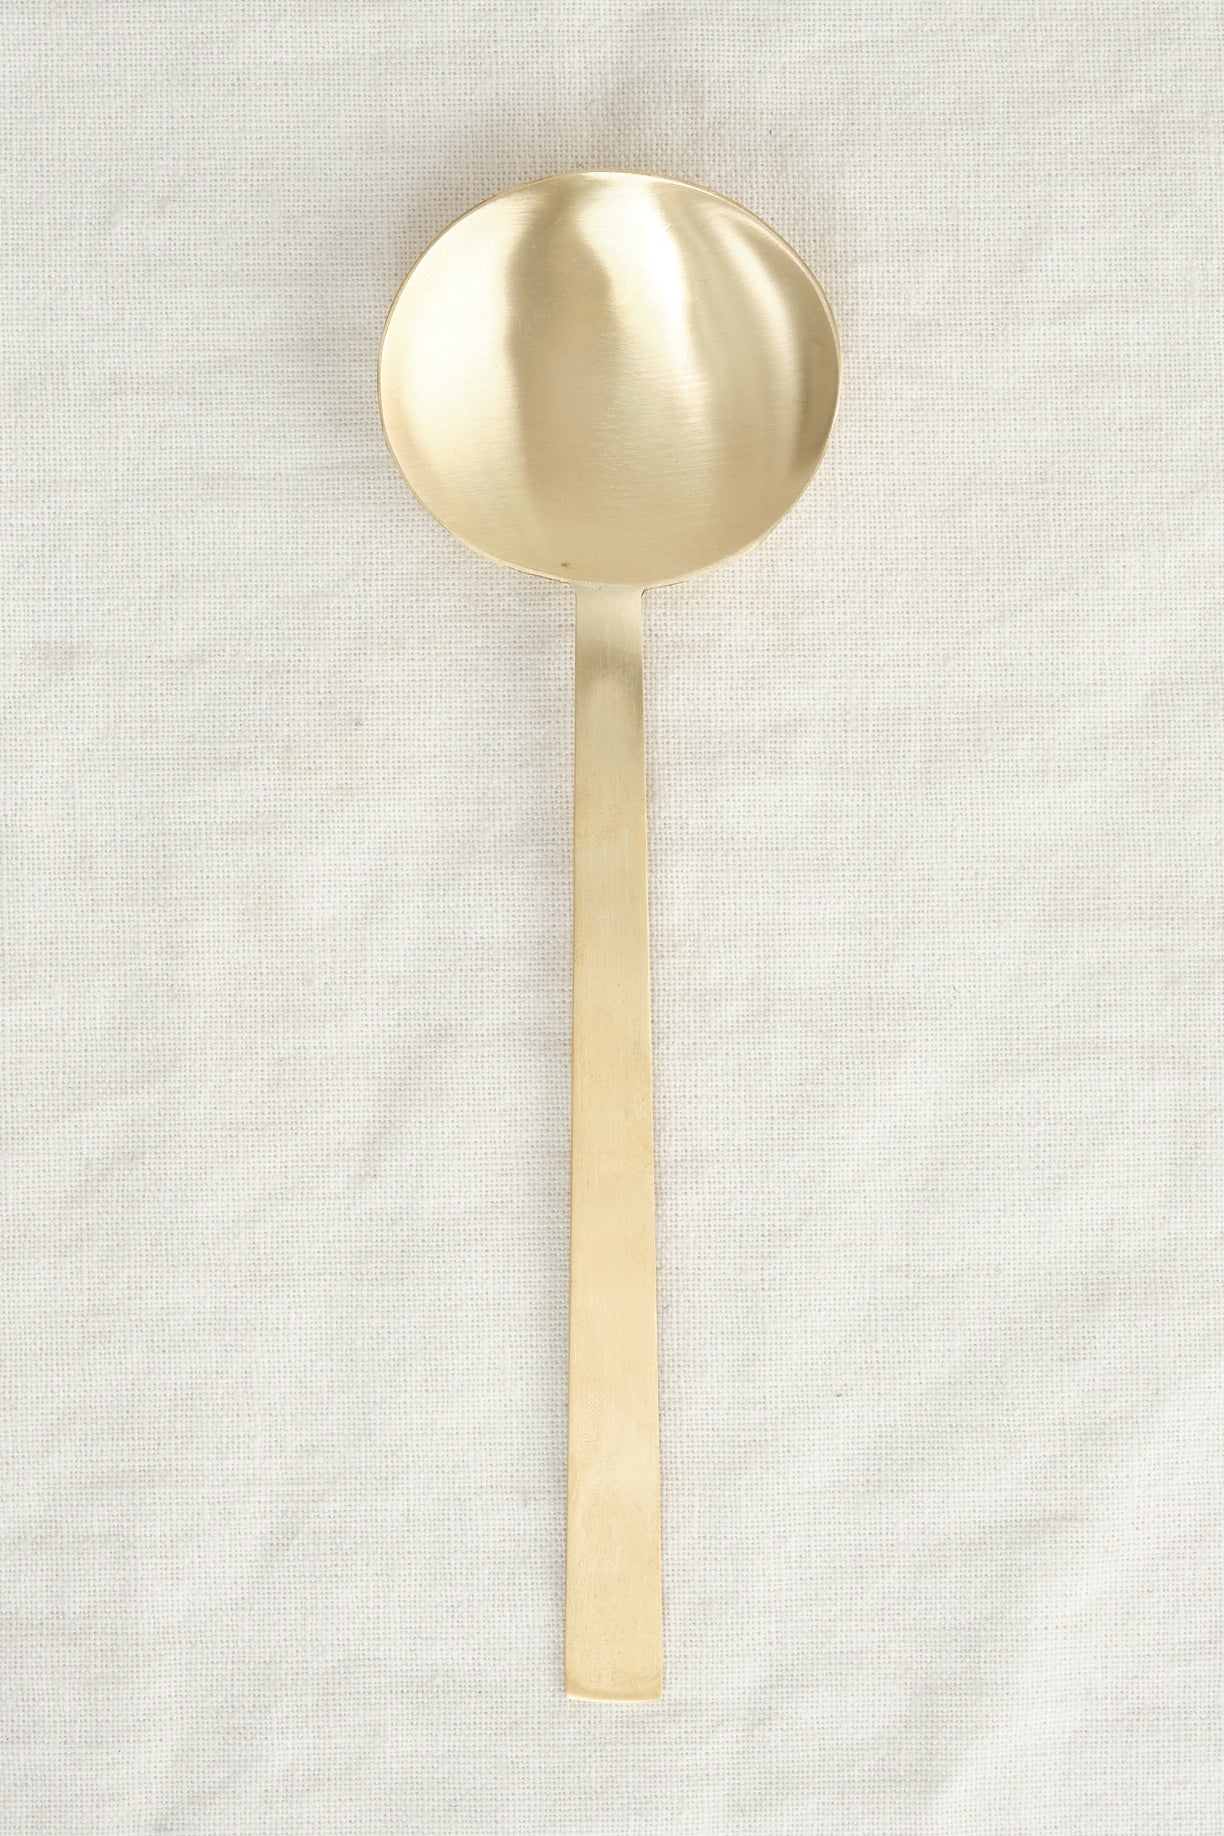 Fog Linen Work medium brass spoon